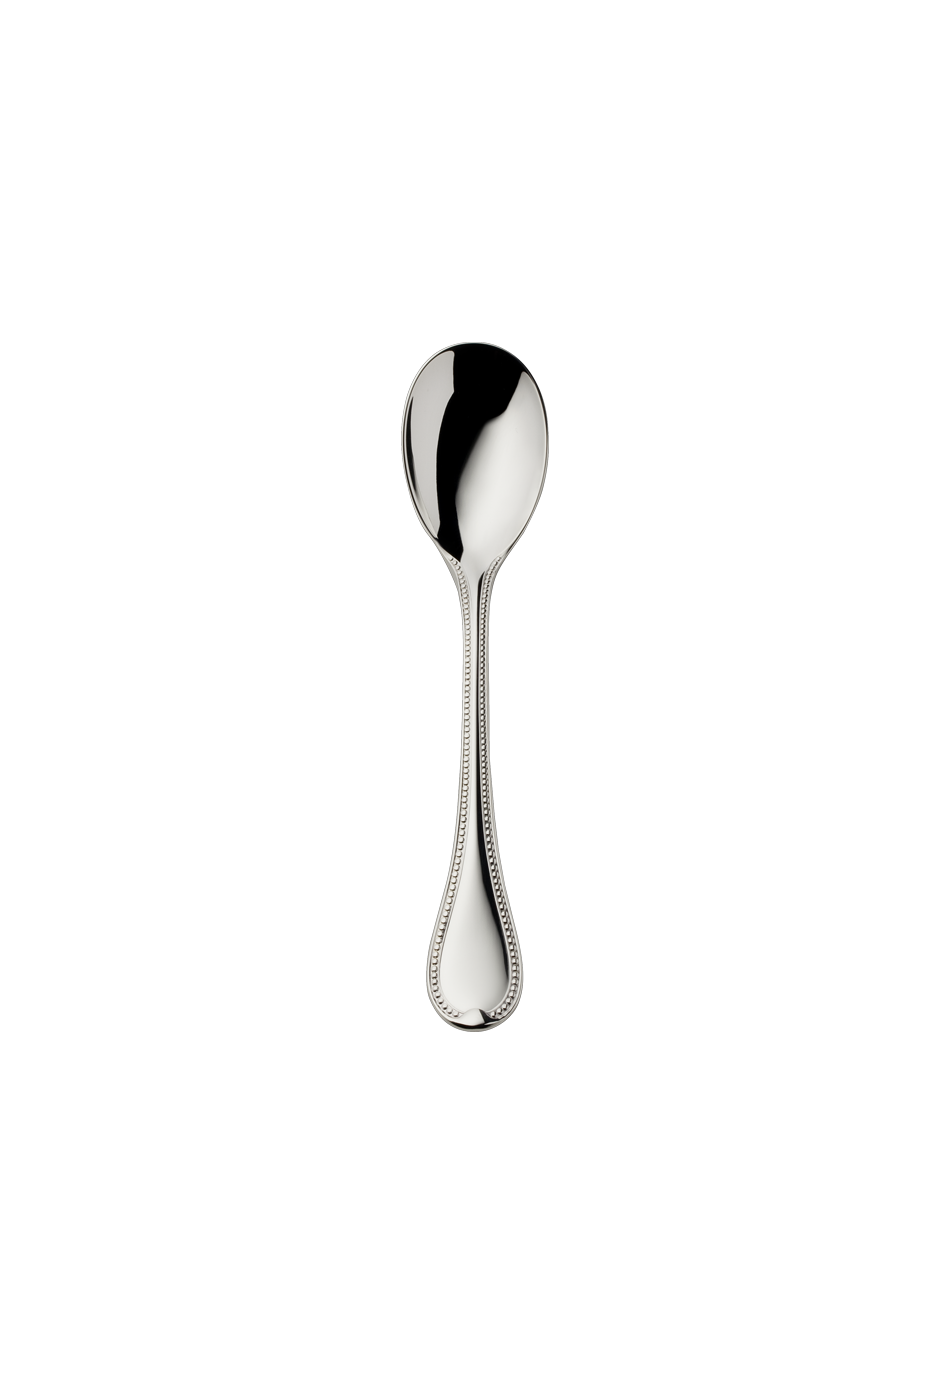 Französisch-Perl Ice-Cream Spoon (150g massive silverplated)